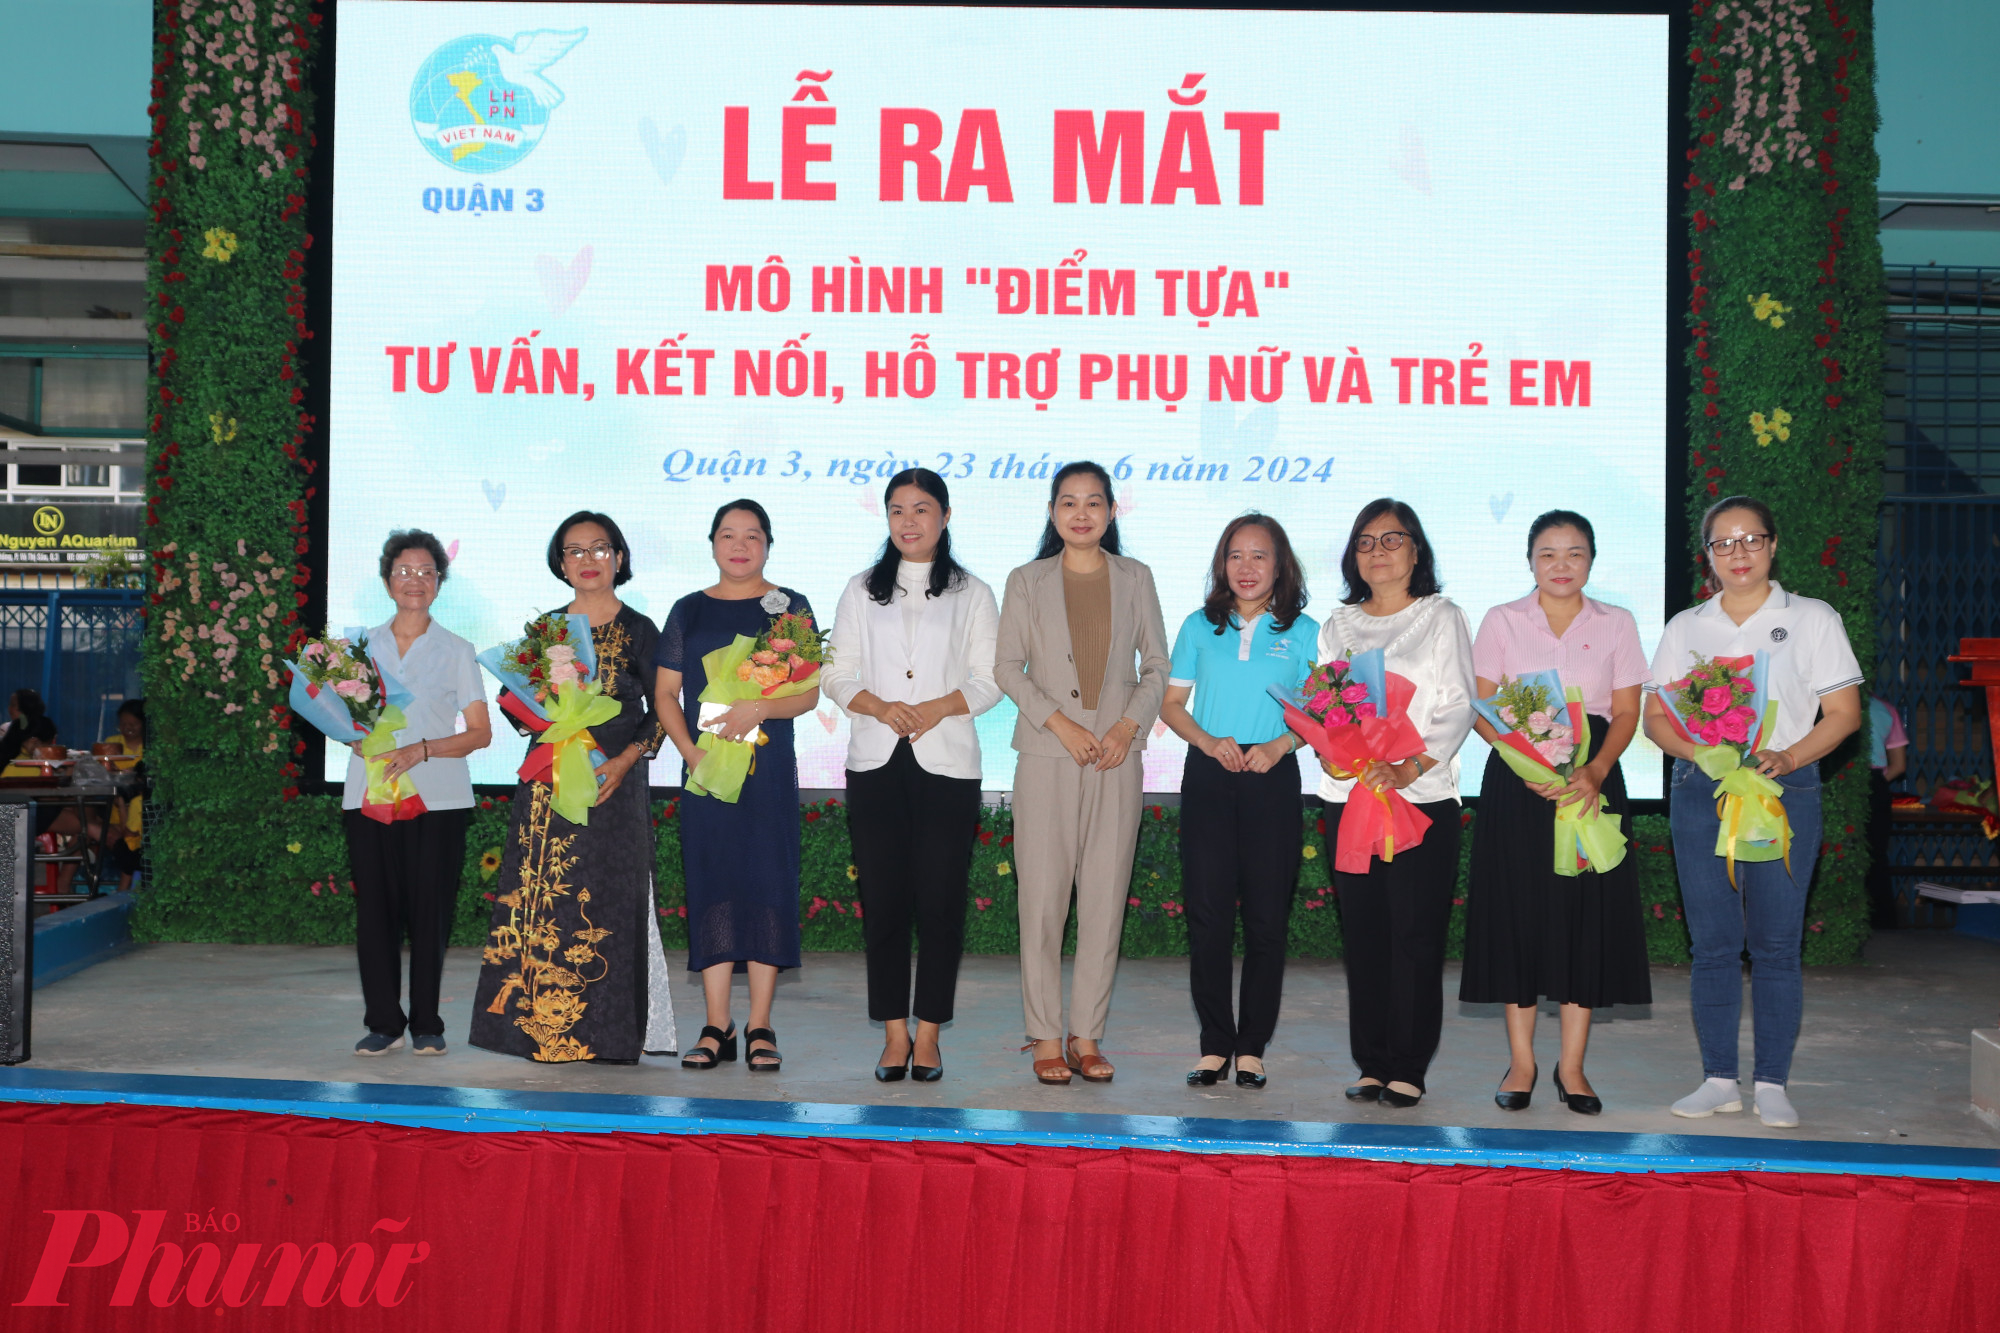 Bà Lâm Thị Ngọc Hoa - Phó Chủ tịch thường trực Hội LHPN TPHCM và bà Đoàn Thị Thu Hằng - Phó Chủ tịch Hội LHPN quận 3 tặng hoa đến các thành viên Tổ tư vấn và các đơn vị hỗ trợ 